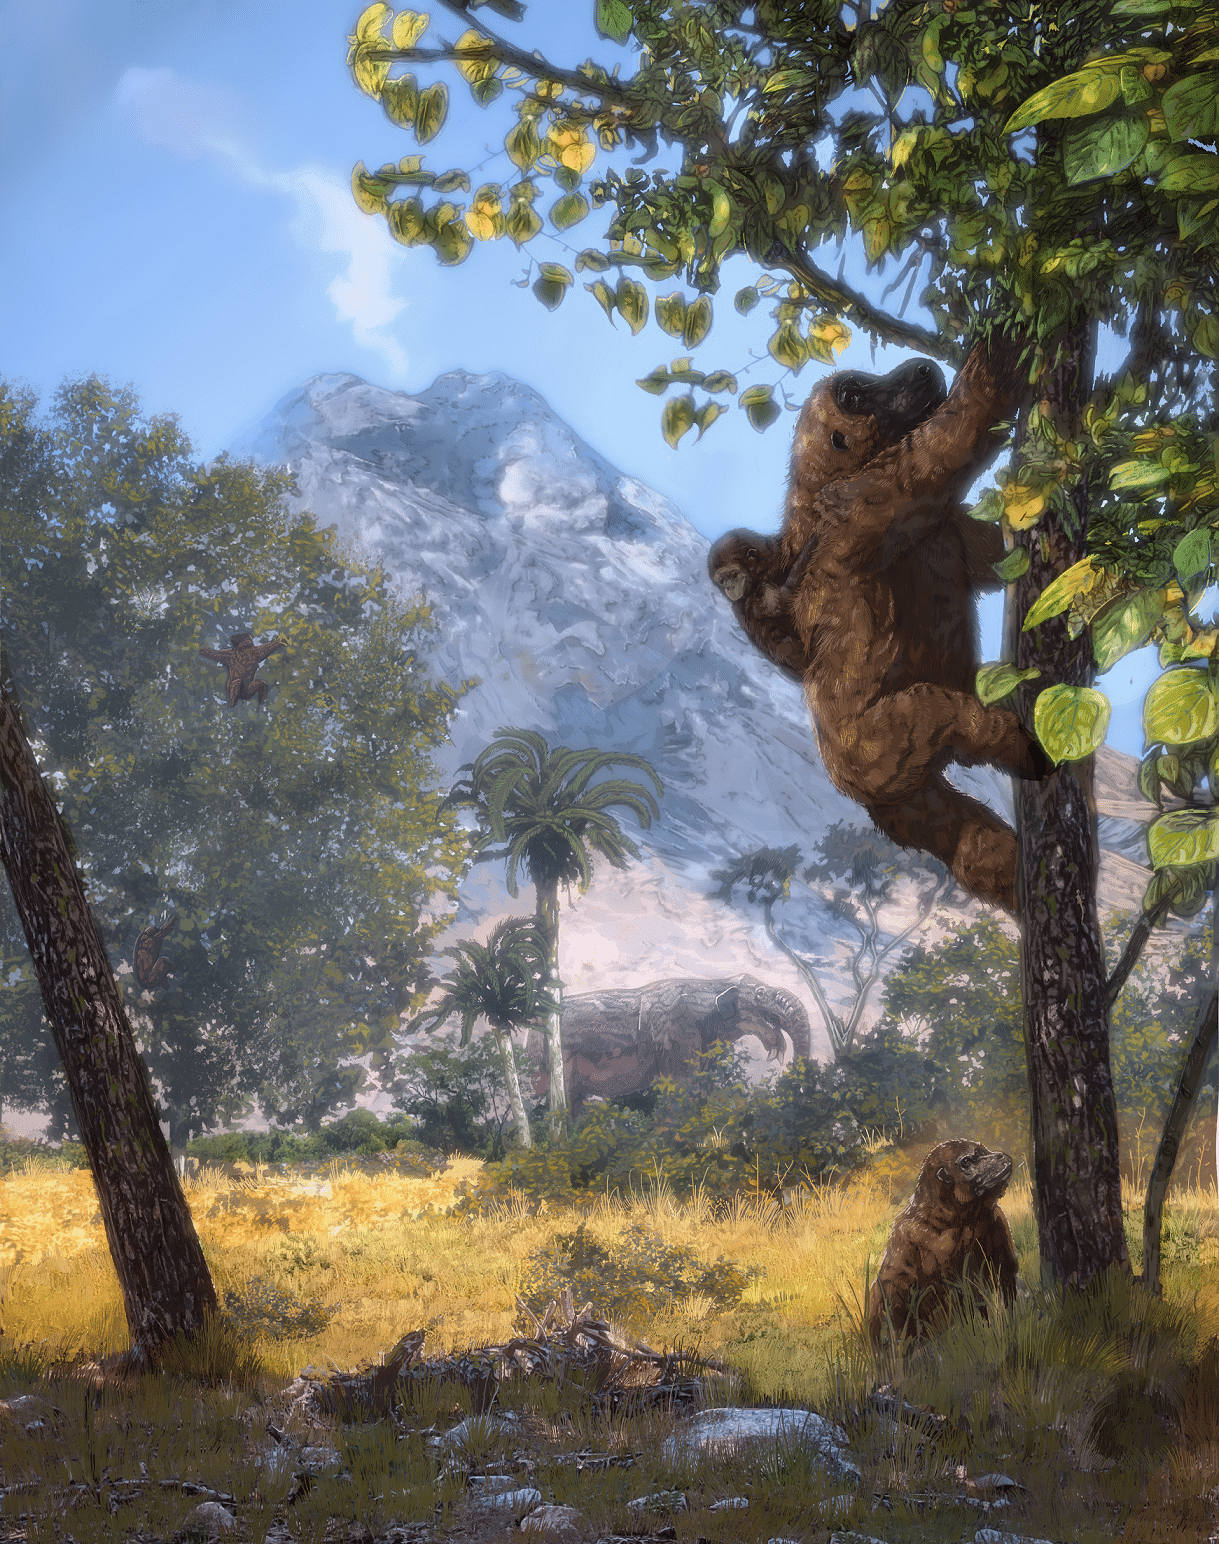 Καλλιτεχνική αναπαράσταση του ανοιχτού δάσους στη θέση Moroto II, με τον πίθηκο Morotopithecus bishop να σκαρφαλώνει κάθετα στο δέντρο με το βρέφος στην πλάτη και το νεαρό πίθηκο από κάτω